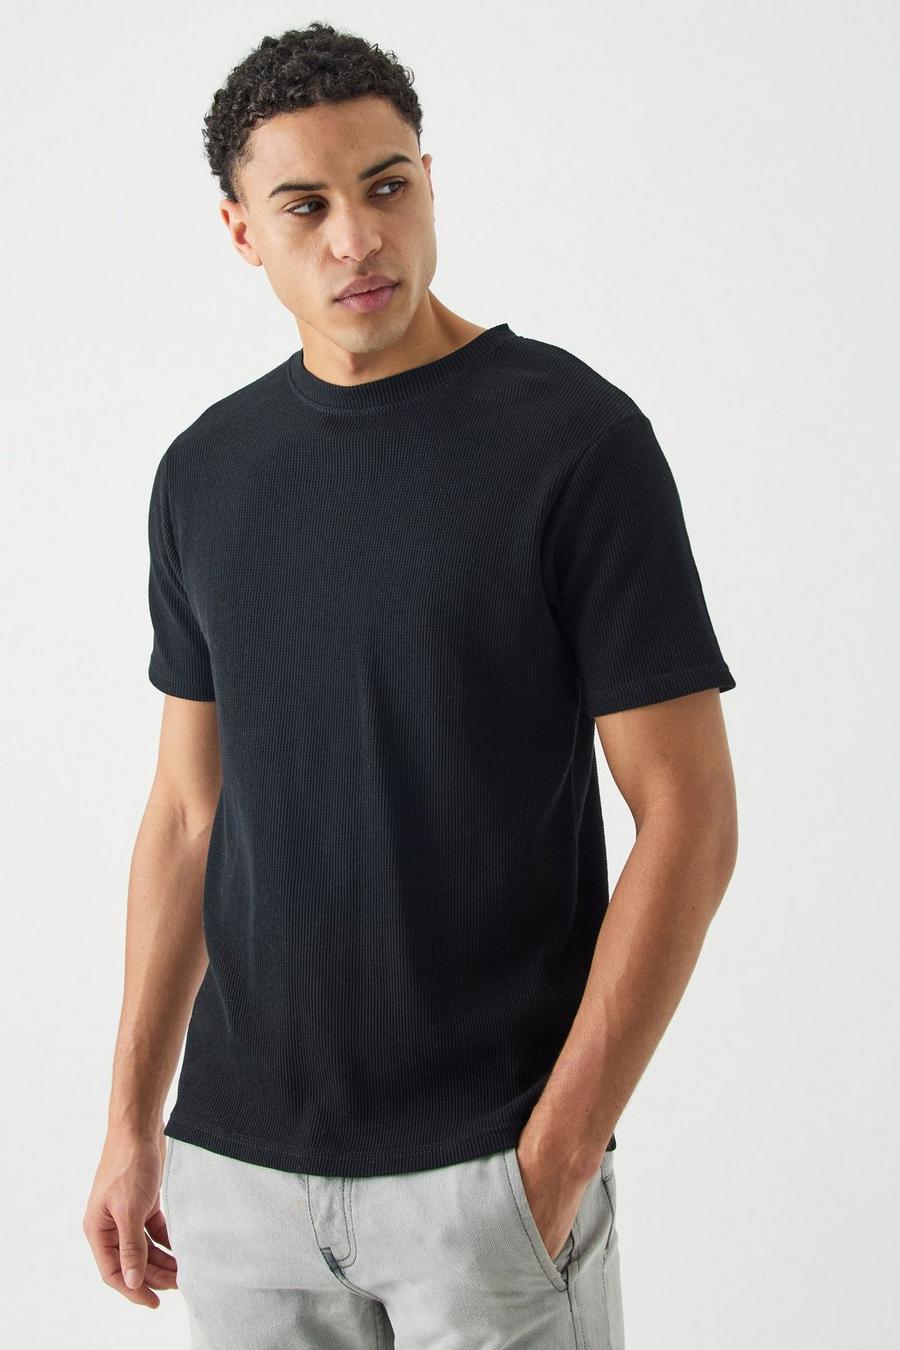 Black Wafel Gebreid Slim Fit T-Shirt image number 1